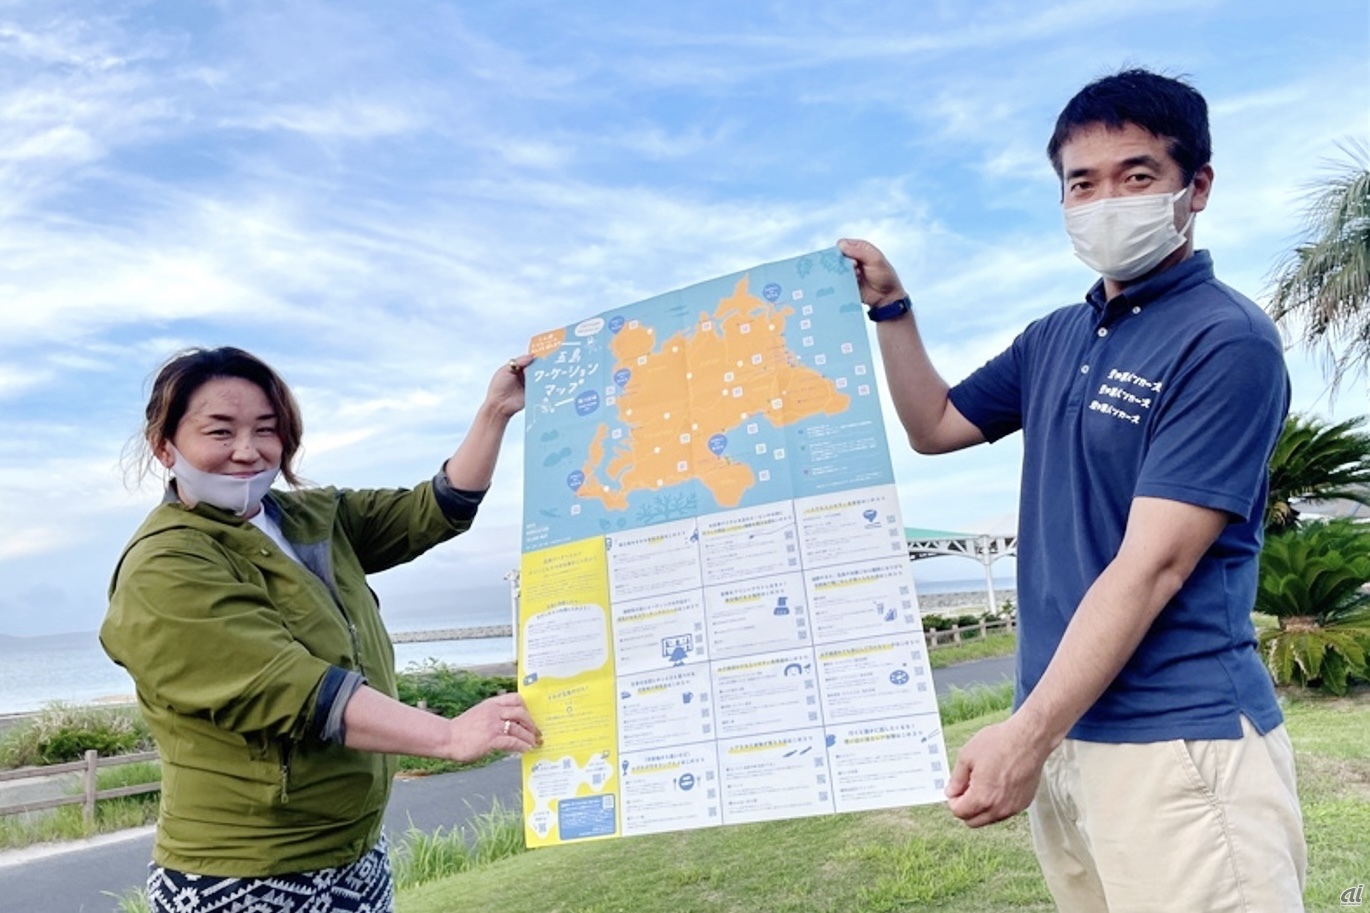 「五島ワーケーションマップ」左はみつめる旅の遠藤氏、右は五島市役所の松野尾氏